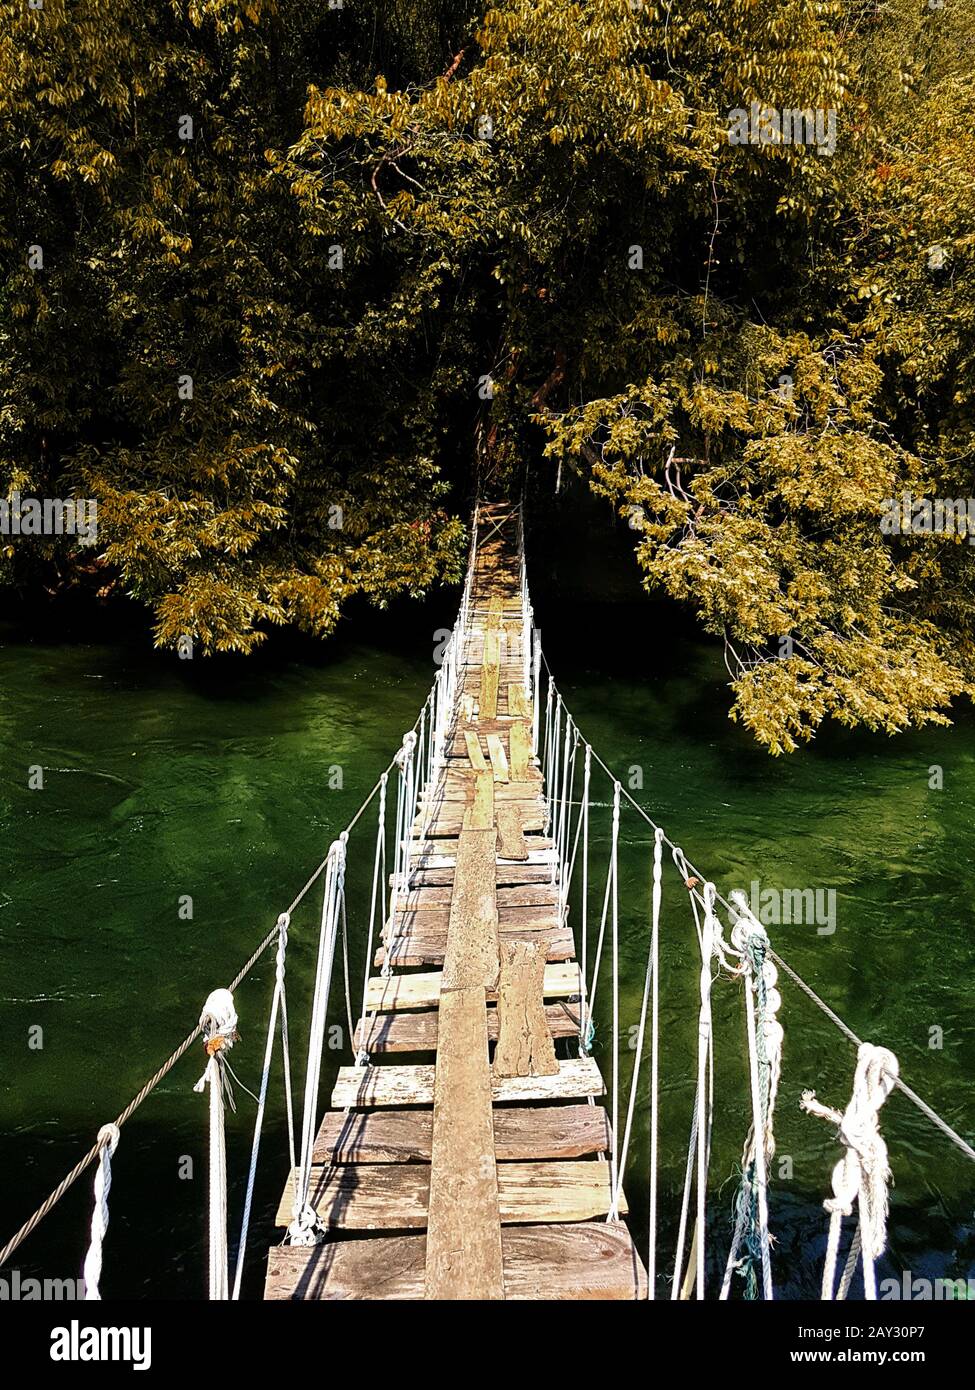 ponte sospeso in legno vecchio che attraversa il fiume alla foresta in autunno stagione con foglie cambiamento di colore. bella natura per sfondo Foto Stock